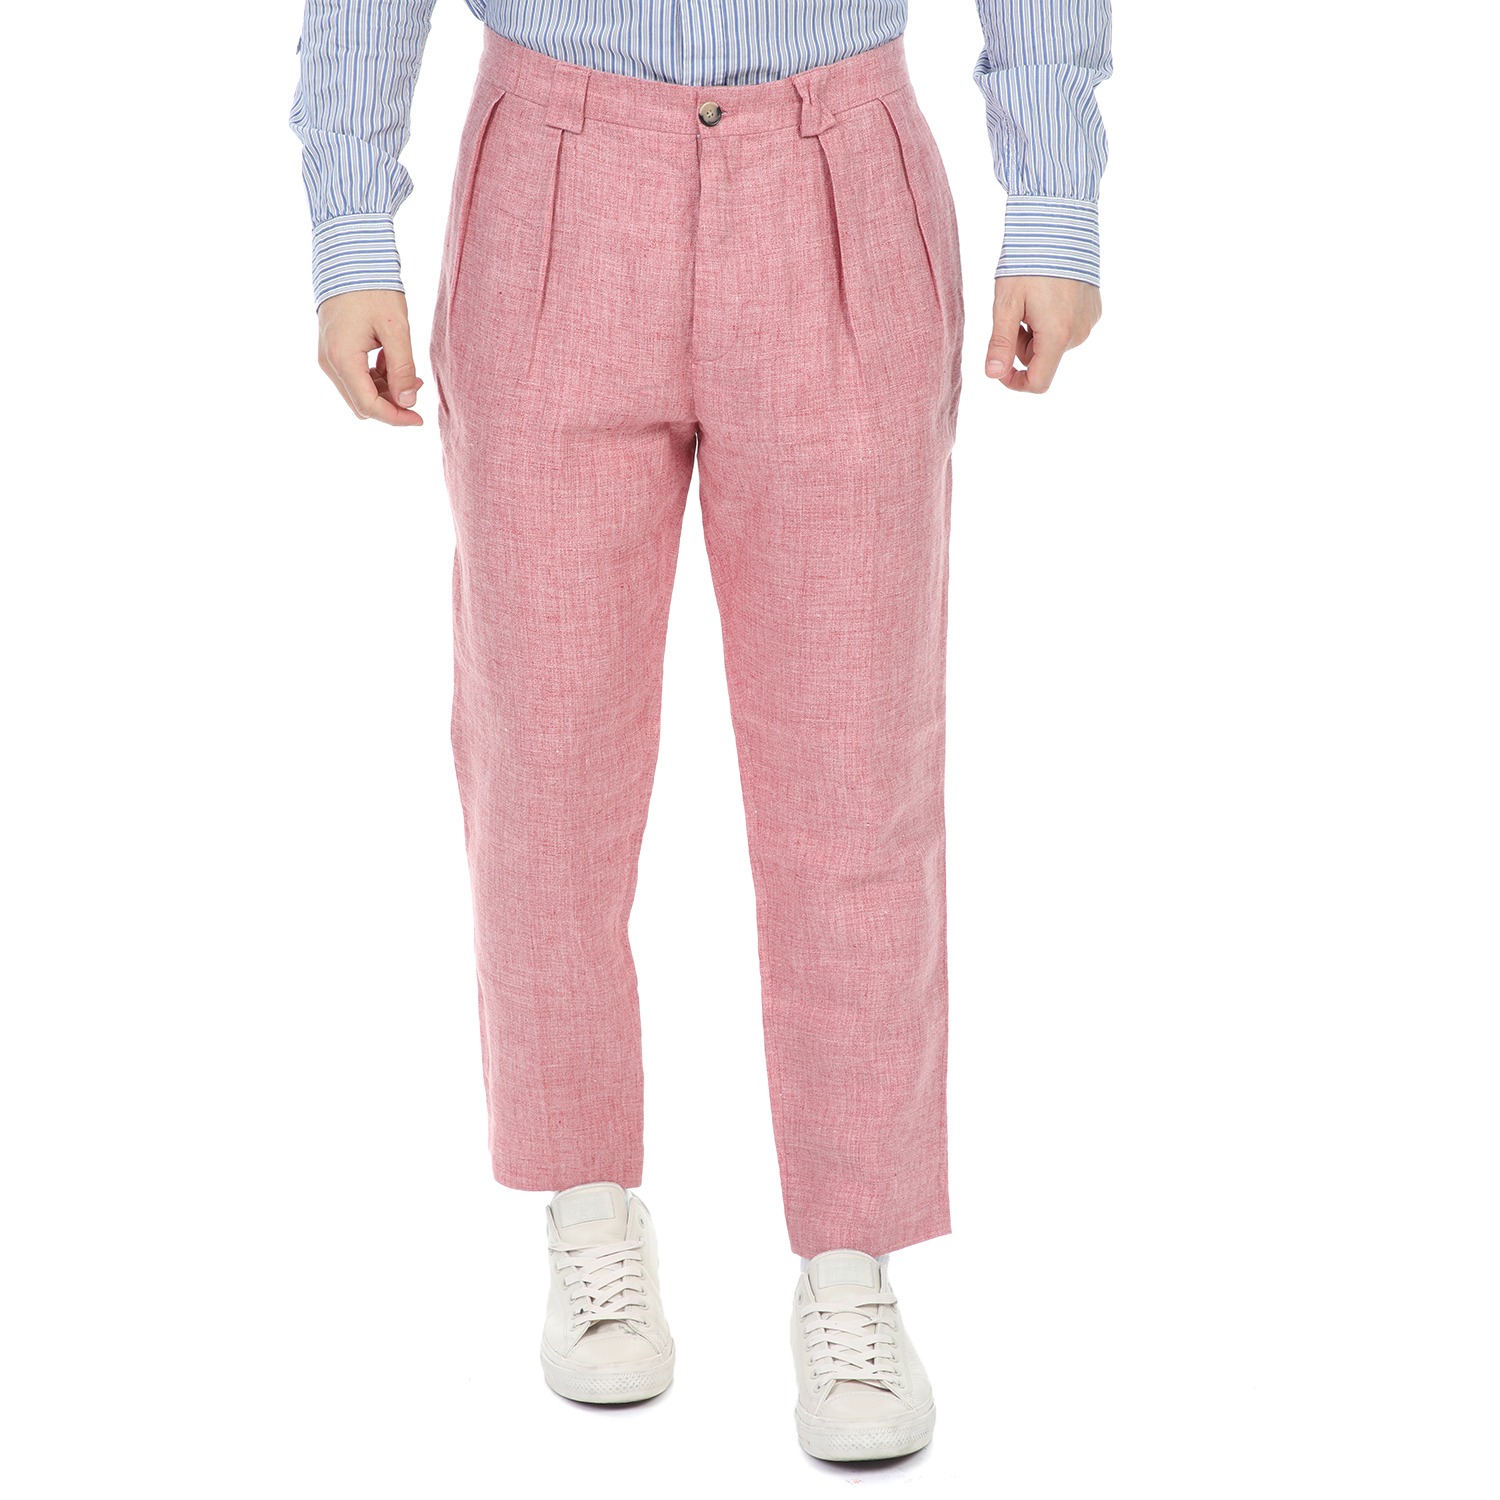 SCOTCH & SODA - Ανδρικό λινό παντελόνι SCOTCH & SODA Owen - Summer wide fit pant ροζ Ανδρικά/Ρούχα/Παντελόνια/Φαρδιά Γραμμή